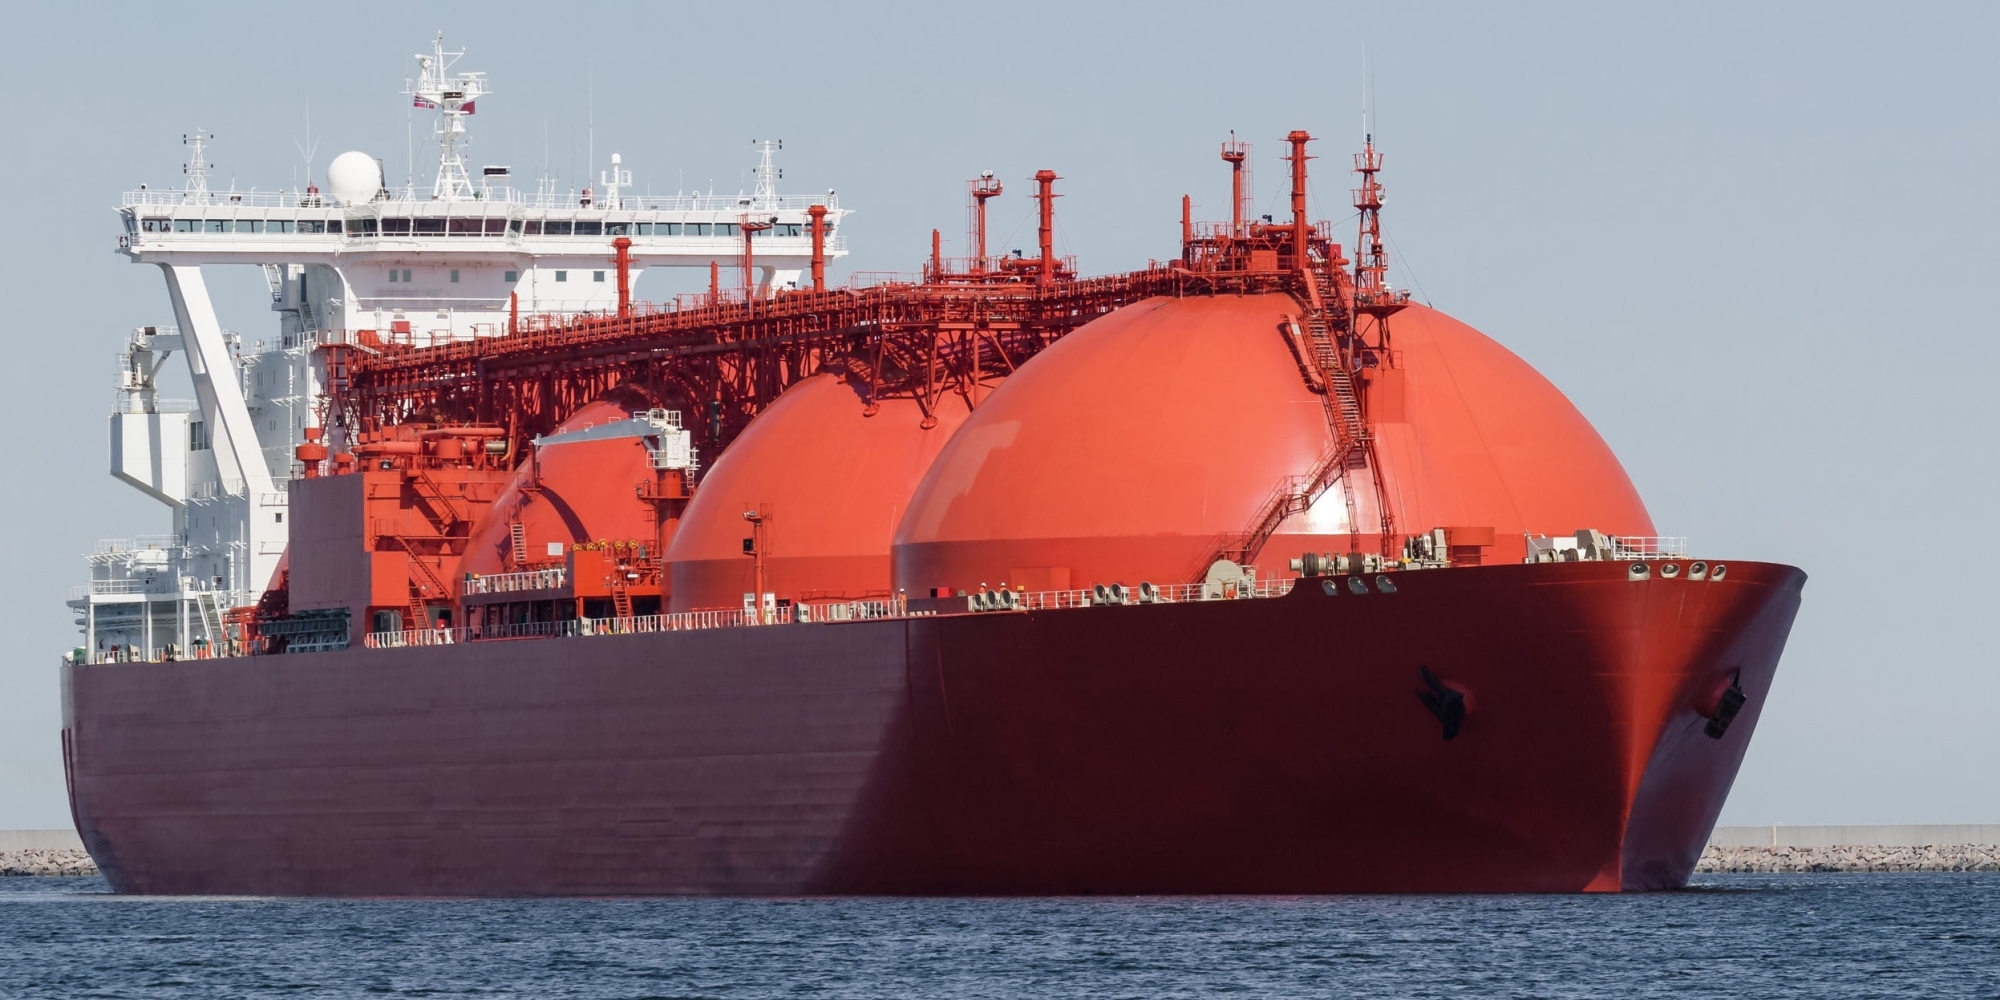 Ще одна проблема на газовому ринку. Чи буде нестача танкерів?